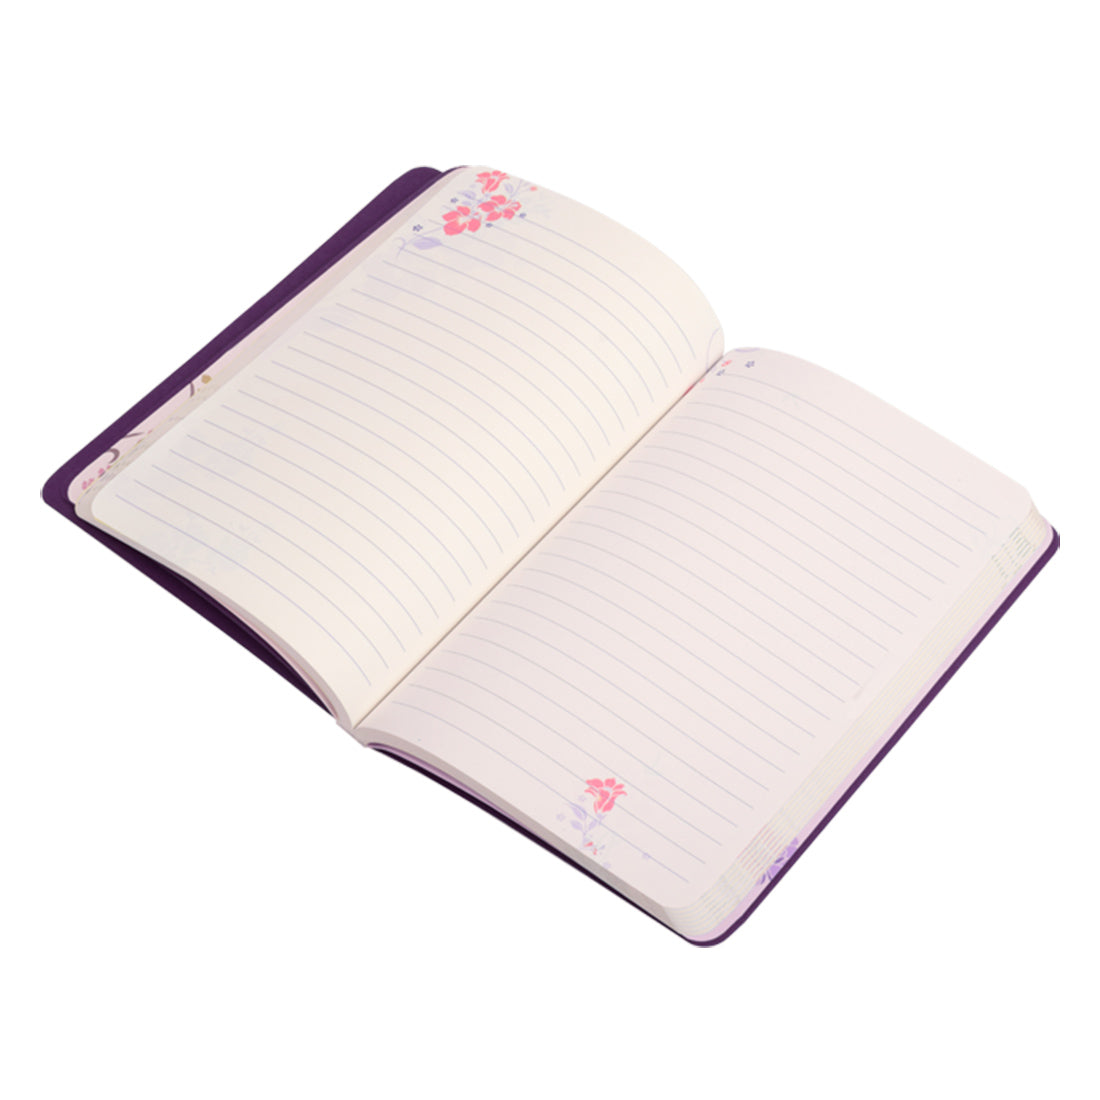 Initial Q - Floral Monogram notebook